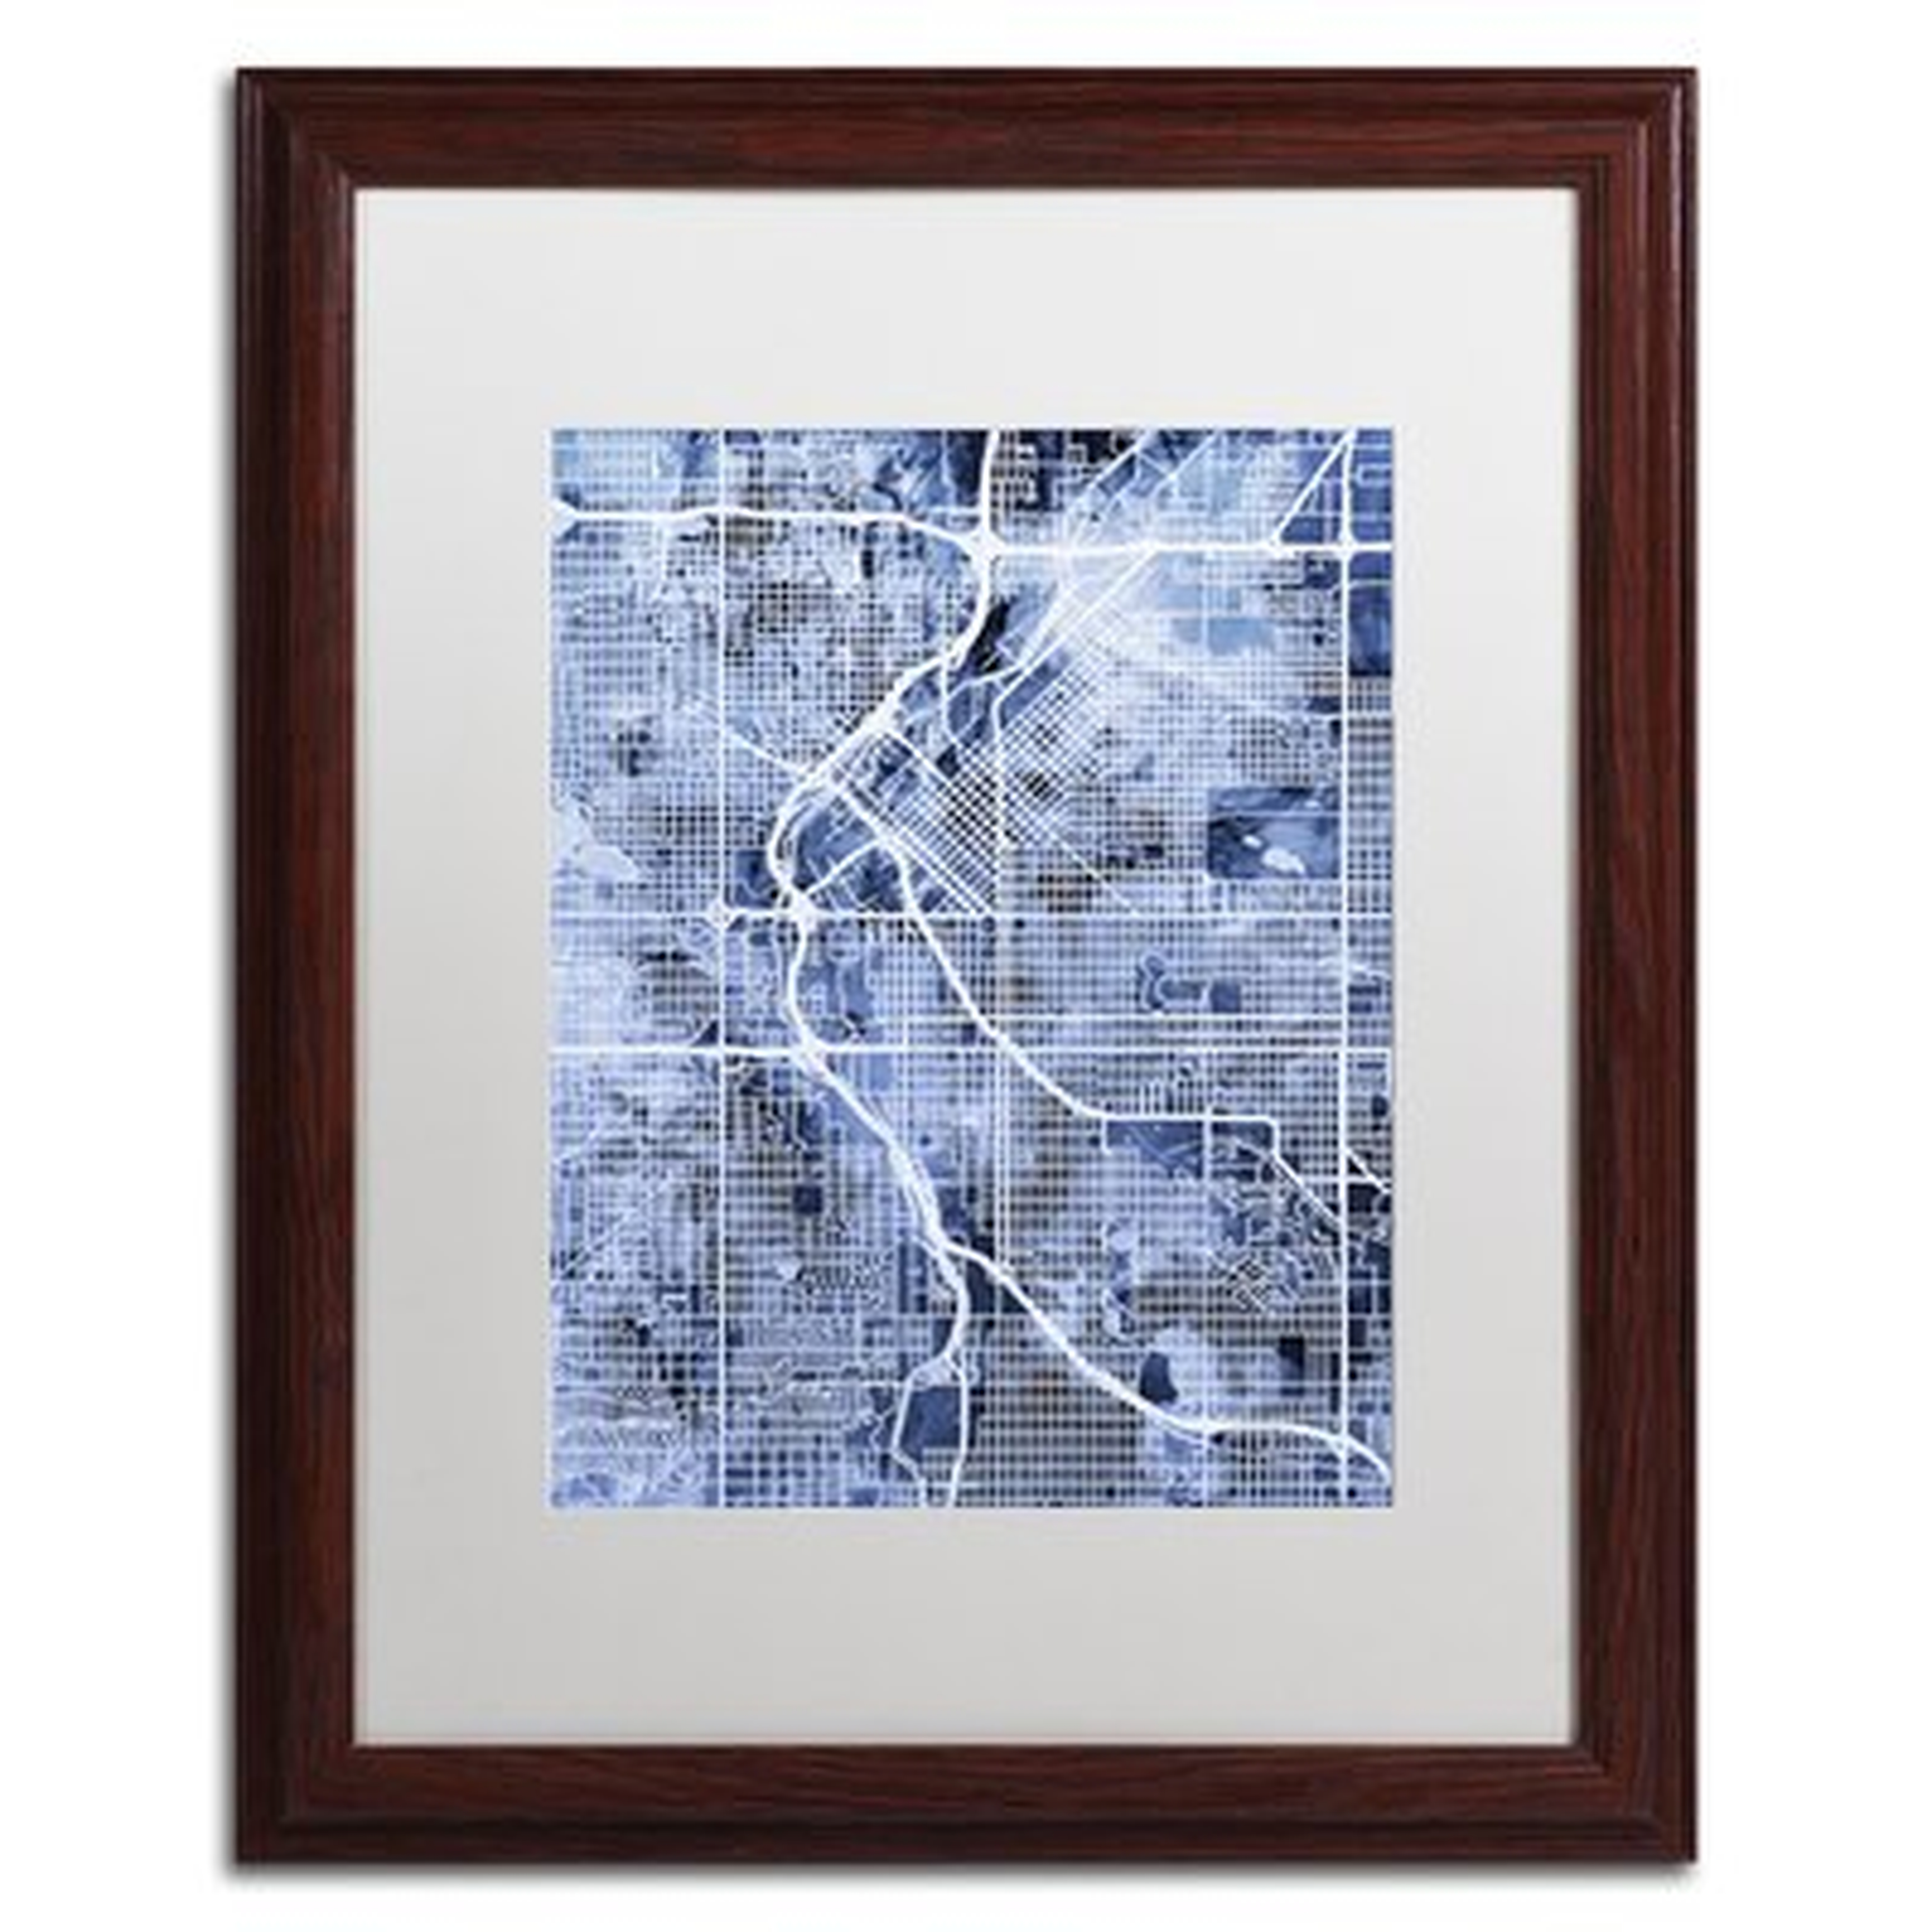 Denver CO Street Map 2" by Michael Tompsett Framed Graphic Art - Wayfair